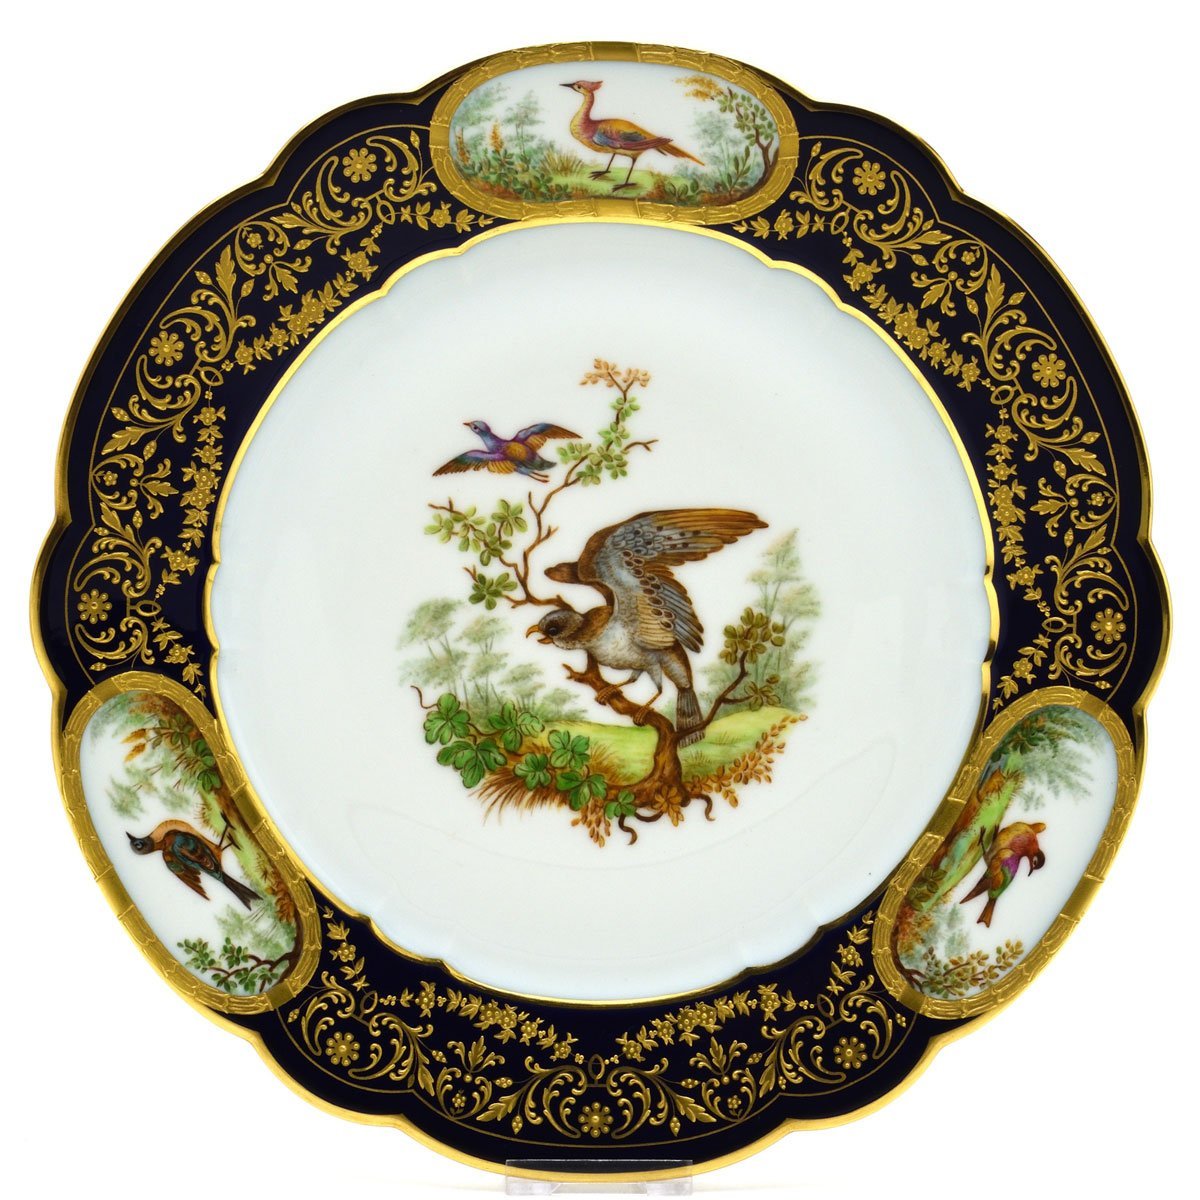 セーブル(Sevres) 超希少 飾り皿 絵皿 鳥たちのデュプレシス エリゼ宮仕様 セーブルブルー金彩縁飾り 2005年復刻 新品